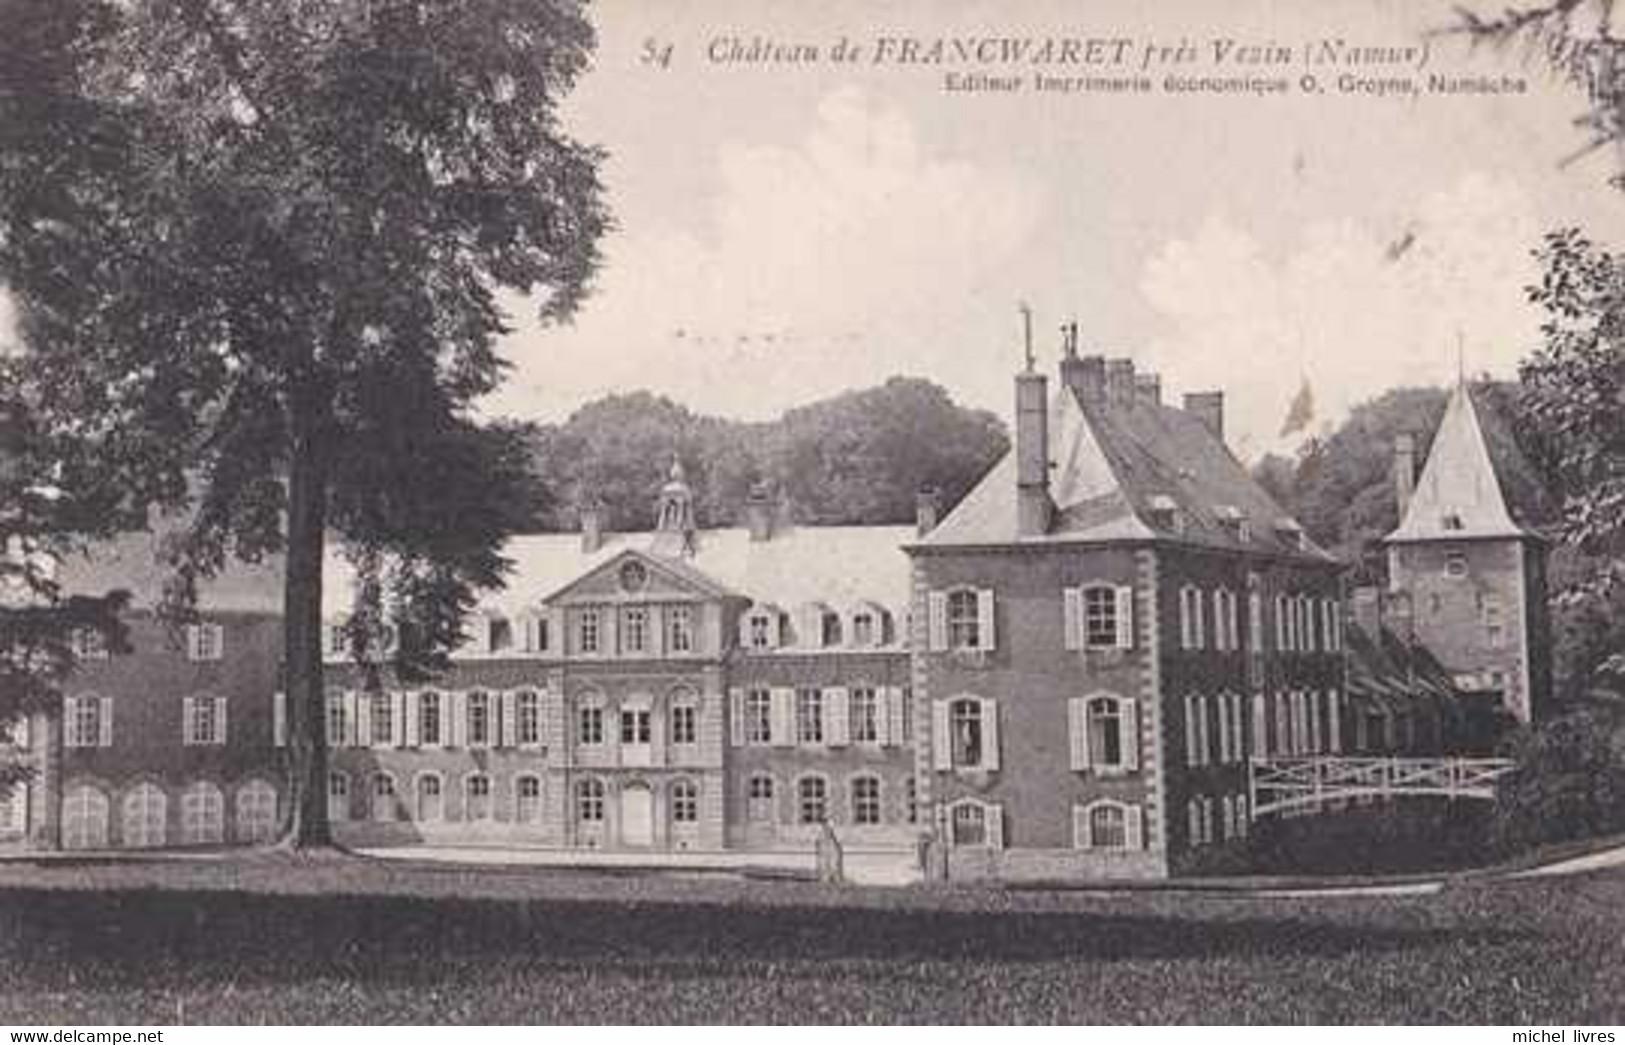 Franc-Waret - Francwaret - Vezin - Fernelmont - Château - Circulé En 1907 - TBE - Fernelmont